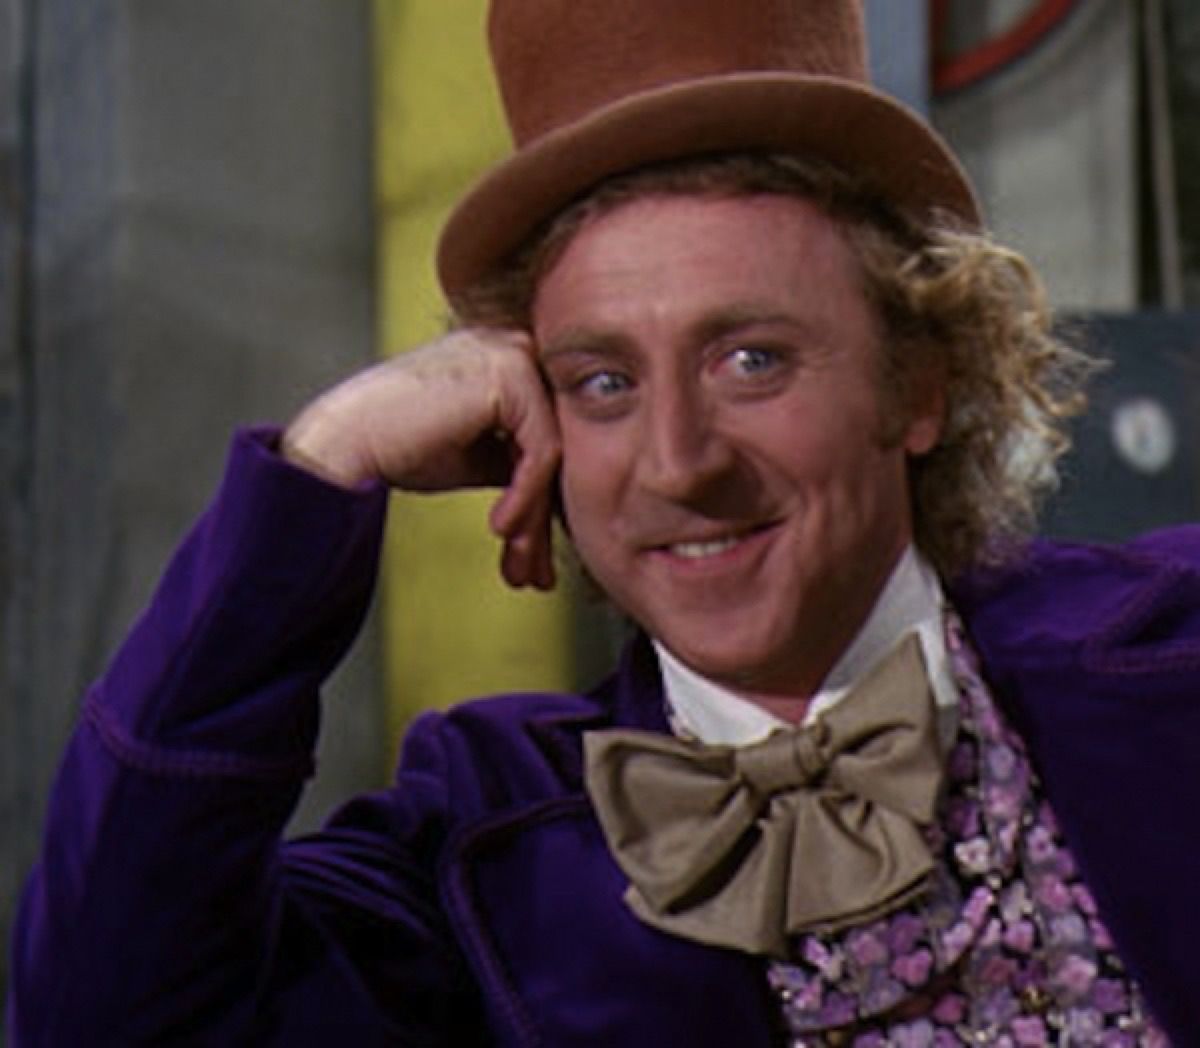 Silindir şapkalı, papyonlu ve mor smokinli Gene Wilder, Willy Wonka